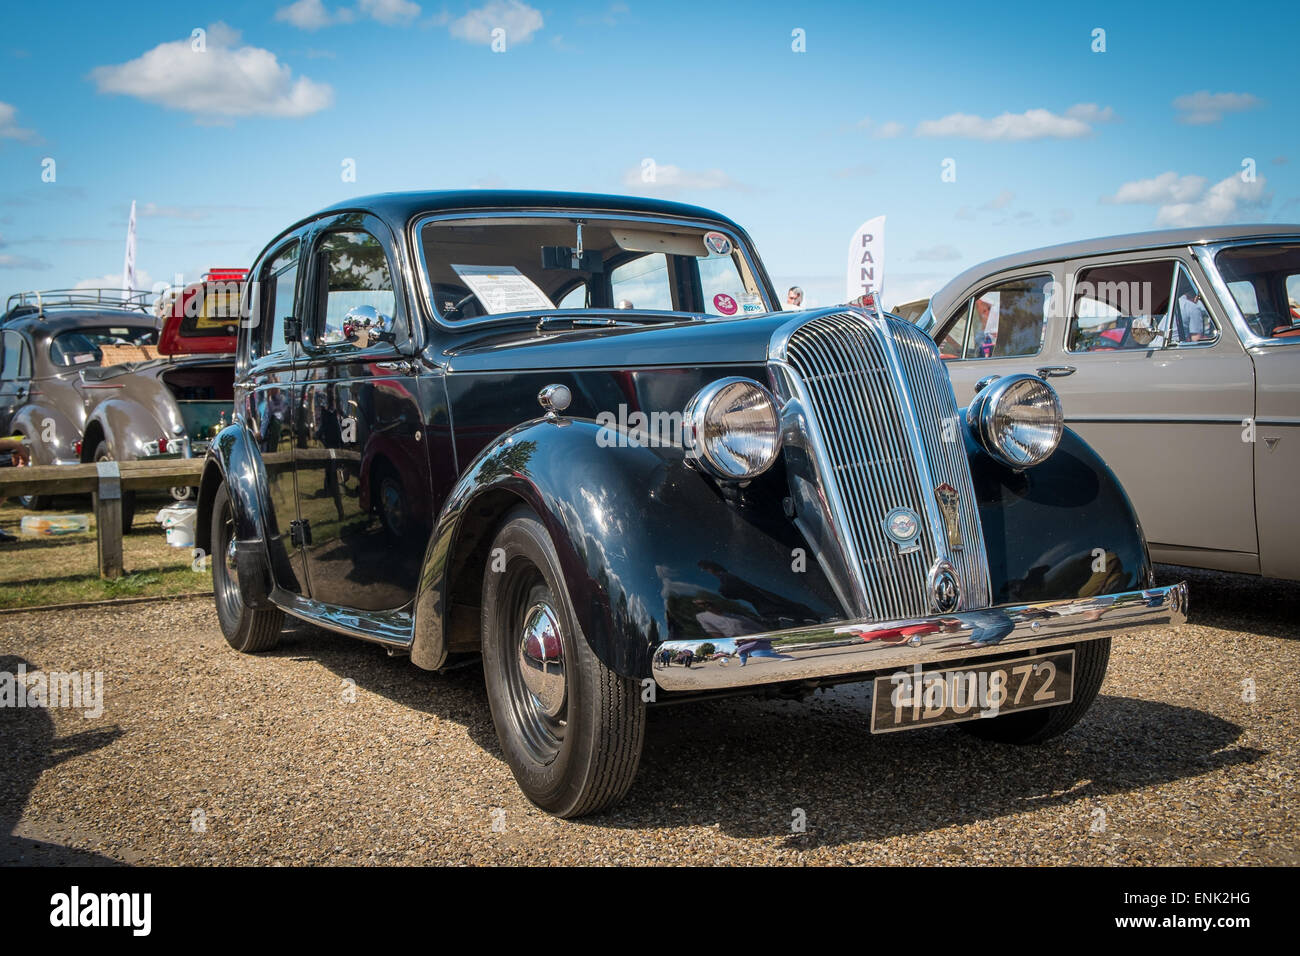 WINDSOR, Berkshire, UK- 3 août 2014 : Noir Austin 14 s'expose à un salon de voitures en août 2013. Banque D'Images